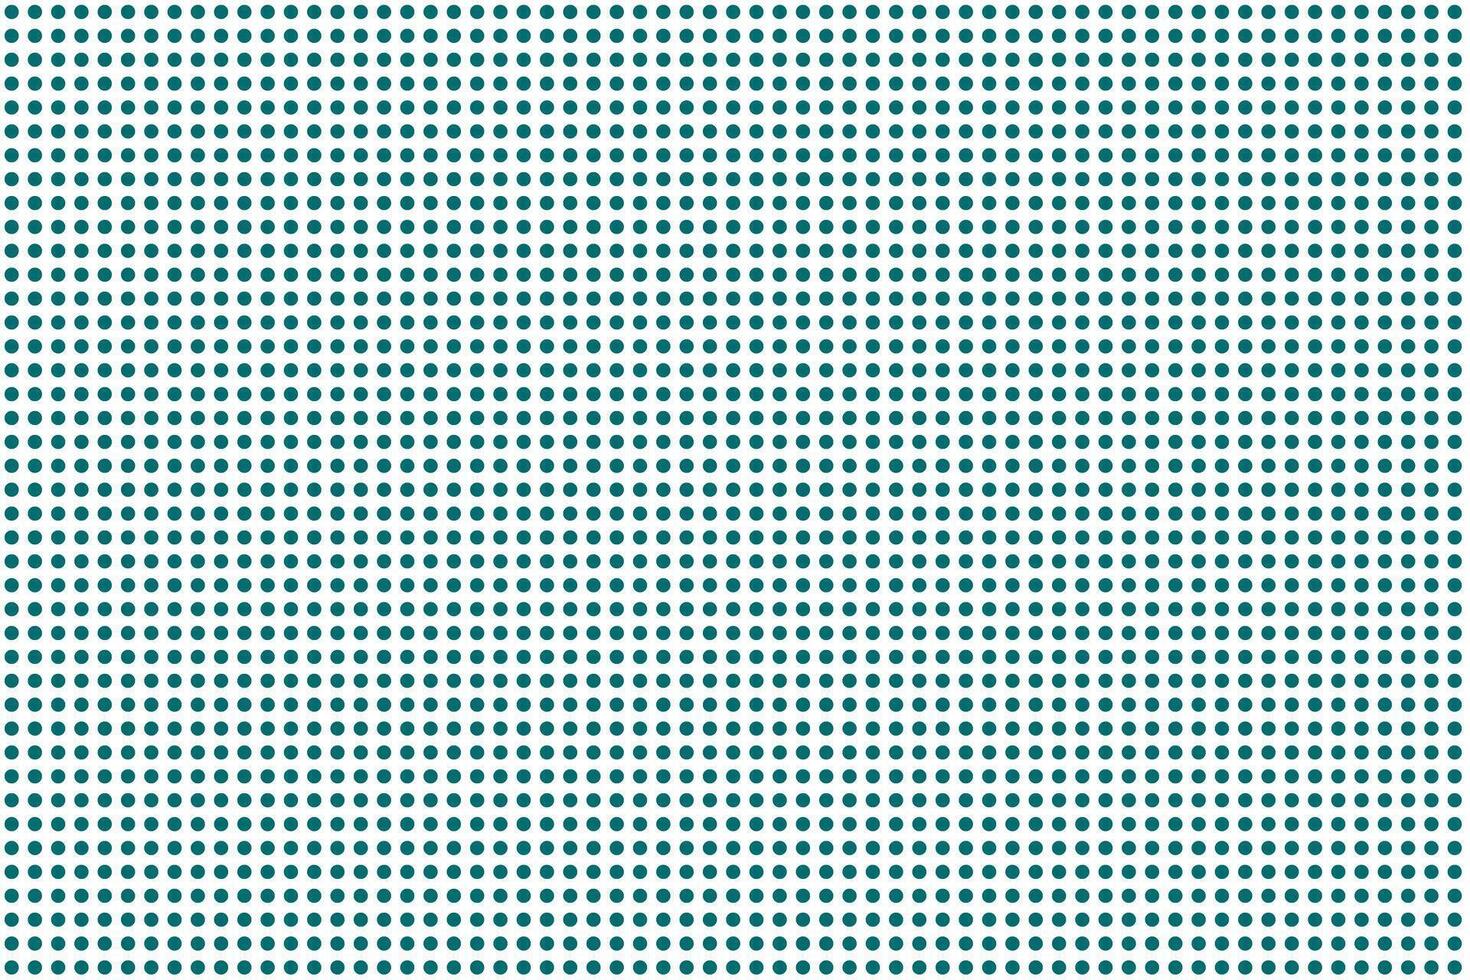 semplice astratto bianca colore polka punto modello su mare verde colore sfondo bianca cerchi su un' blu sfondo semplice astratto mare verde Light ans buio colore daigonal linea zig zag modello astratto ondulato vettore